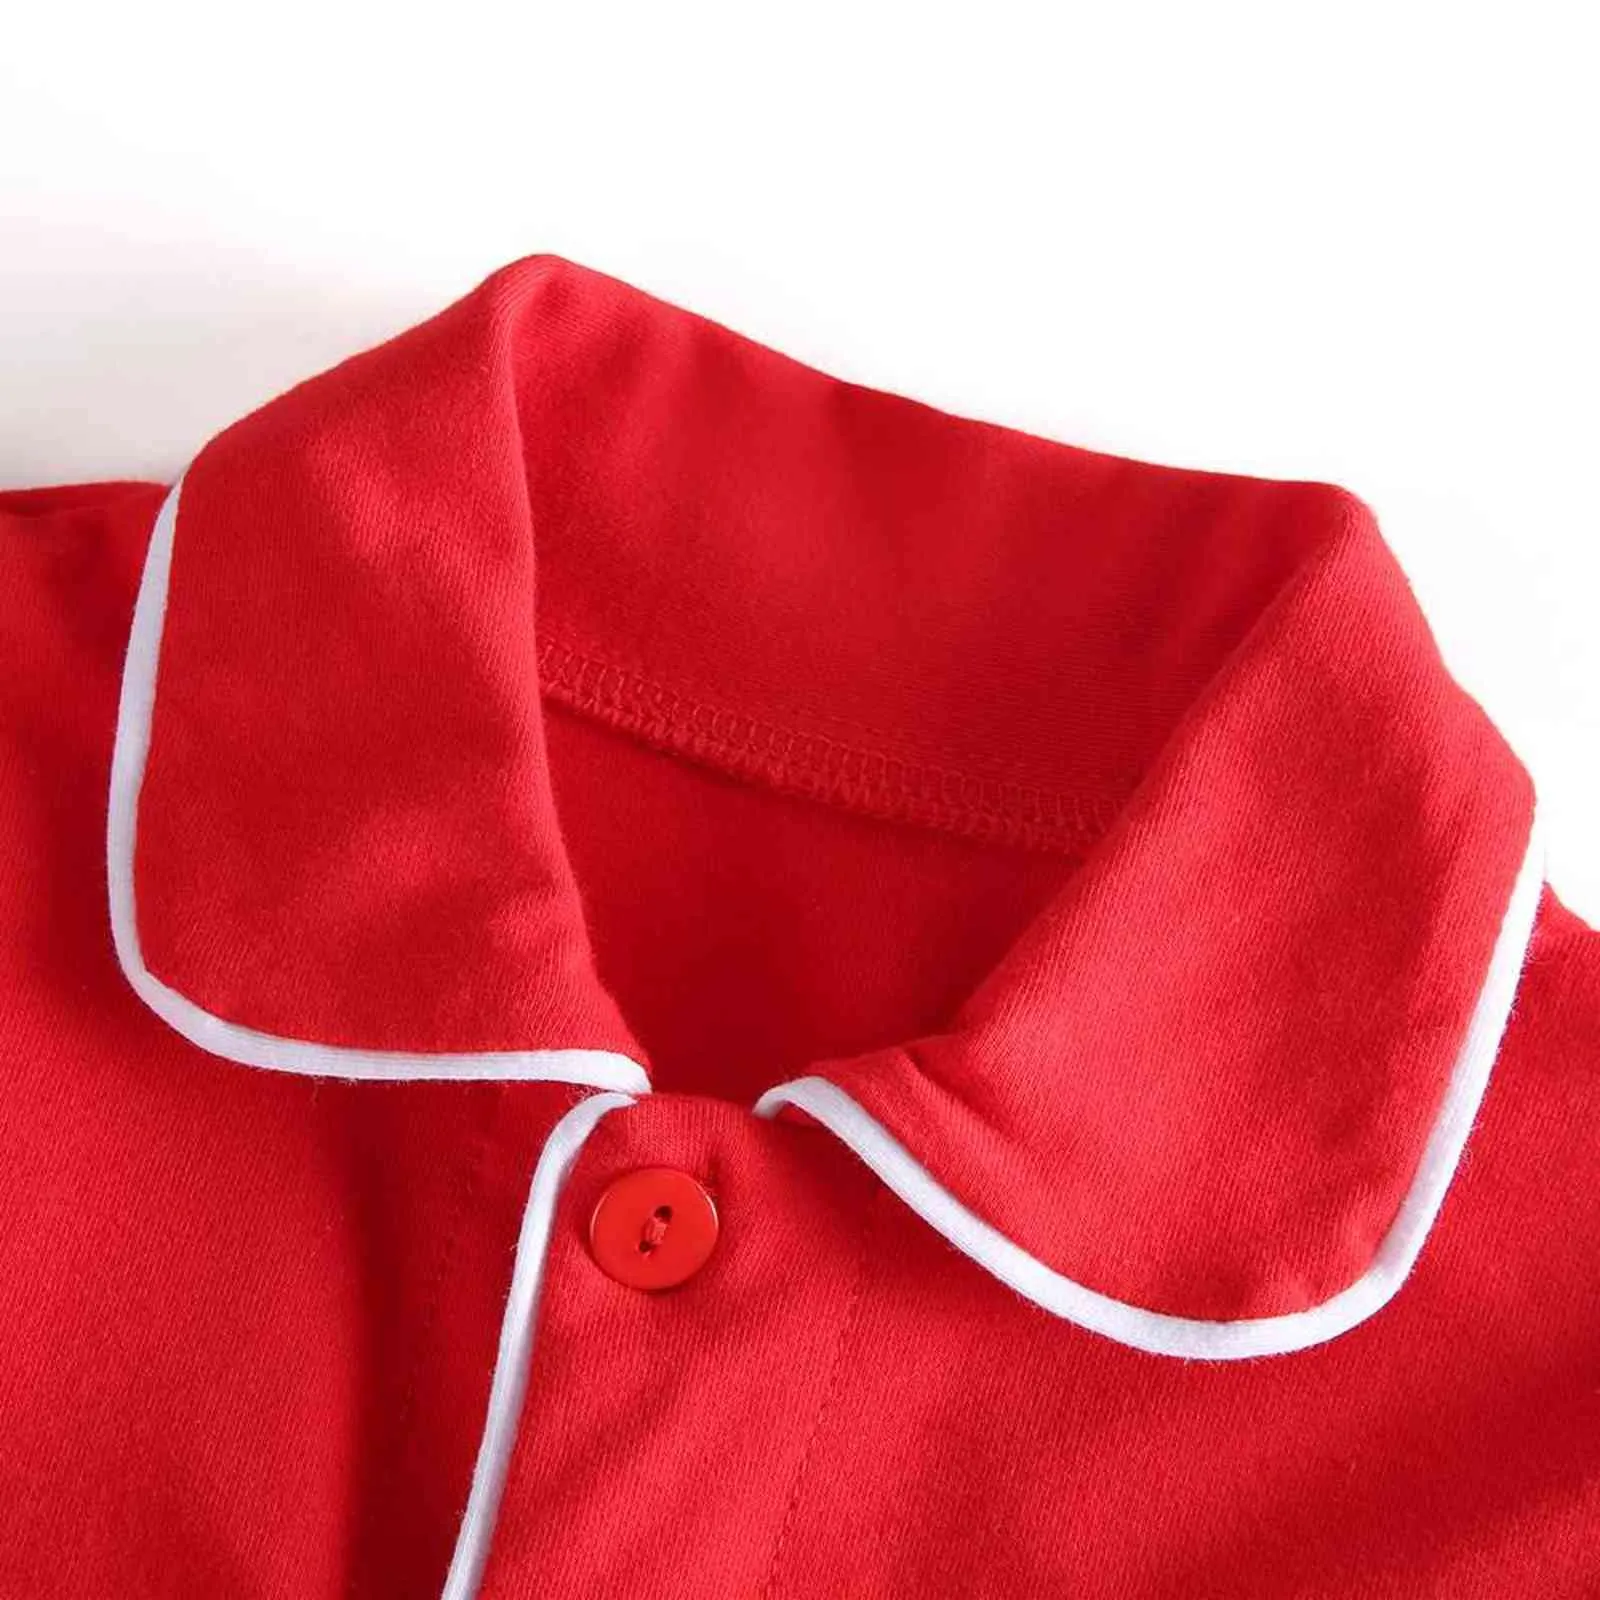 Vinterbutik sammet tyg röda barn kläder pjs med spets småbarn pojkar set pyjamas flicka baby sömnkläder 2111022842502